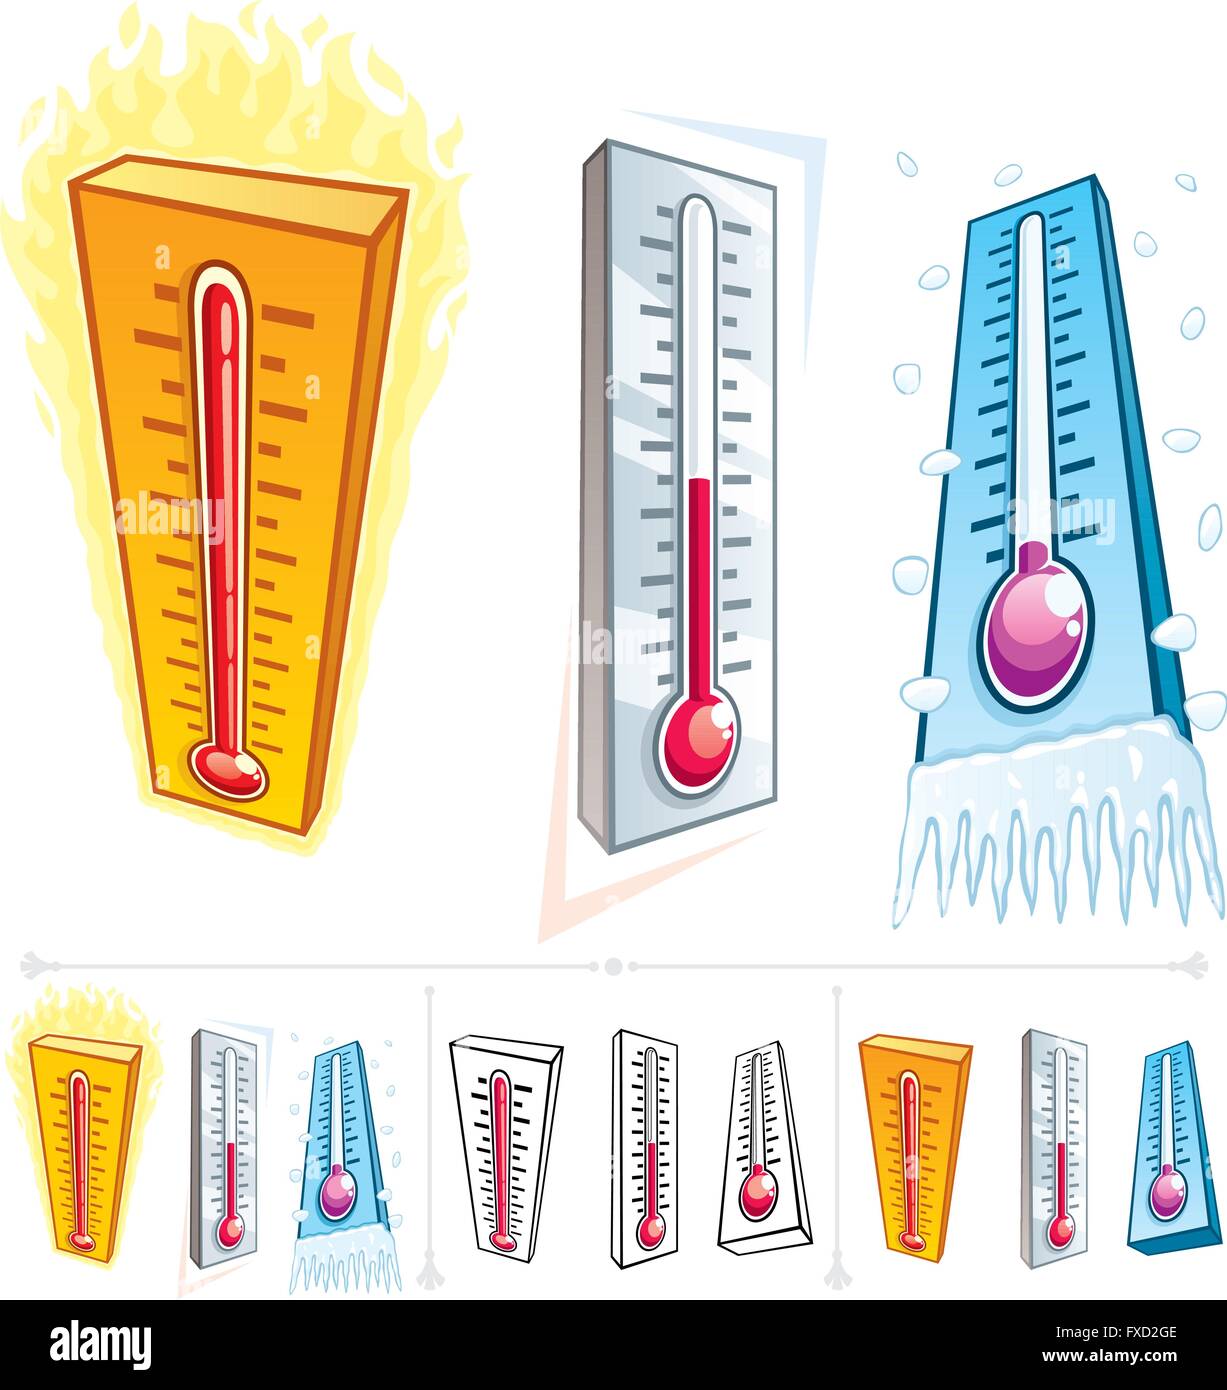 Termometro in 3 differenti condizioni termiche. Di seguito sono riportate altre 3 versioni di esso. Illustrazione Vettoriale